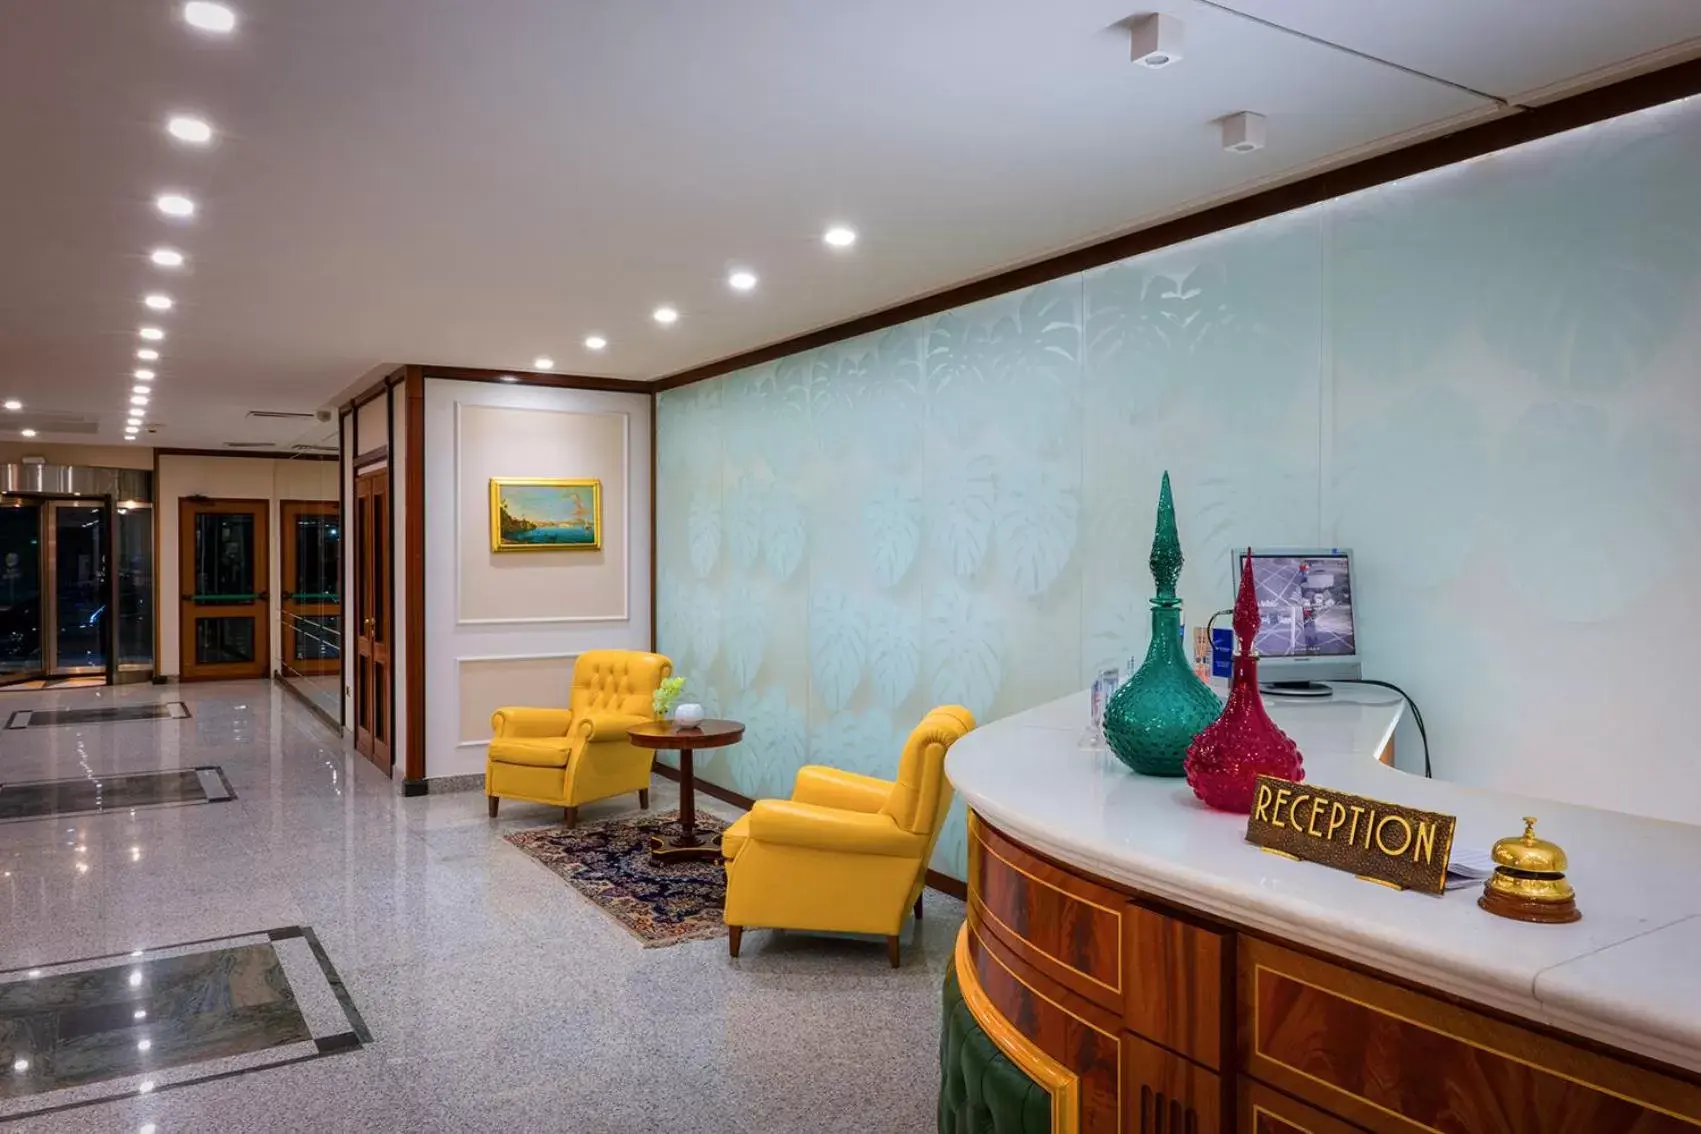 Lobby or reception, Lobby/Reception in Best Western Hotel Ferrari